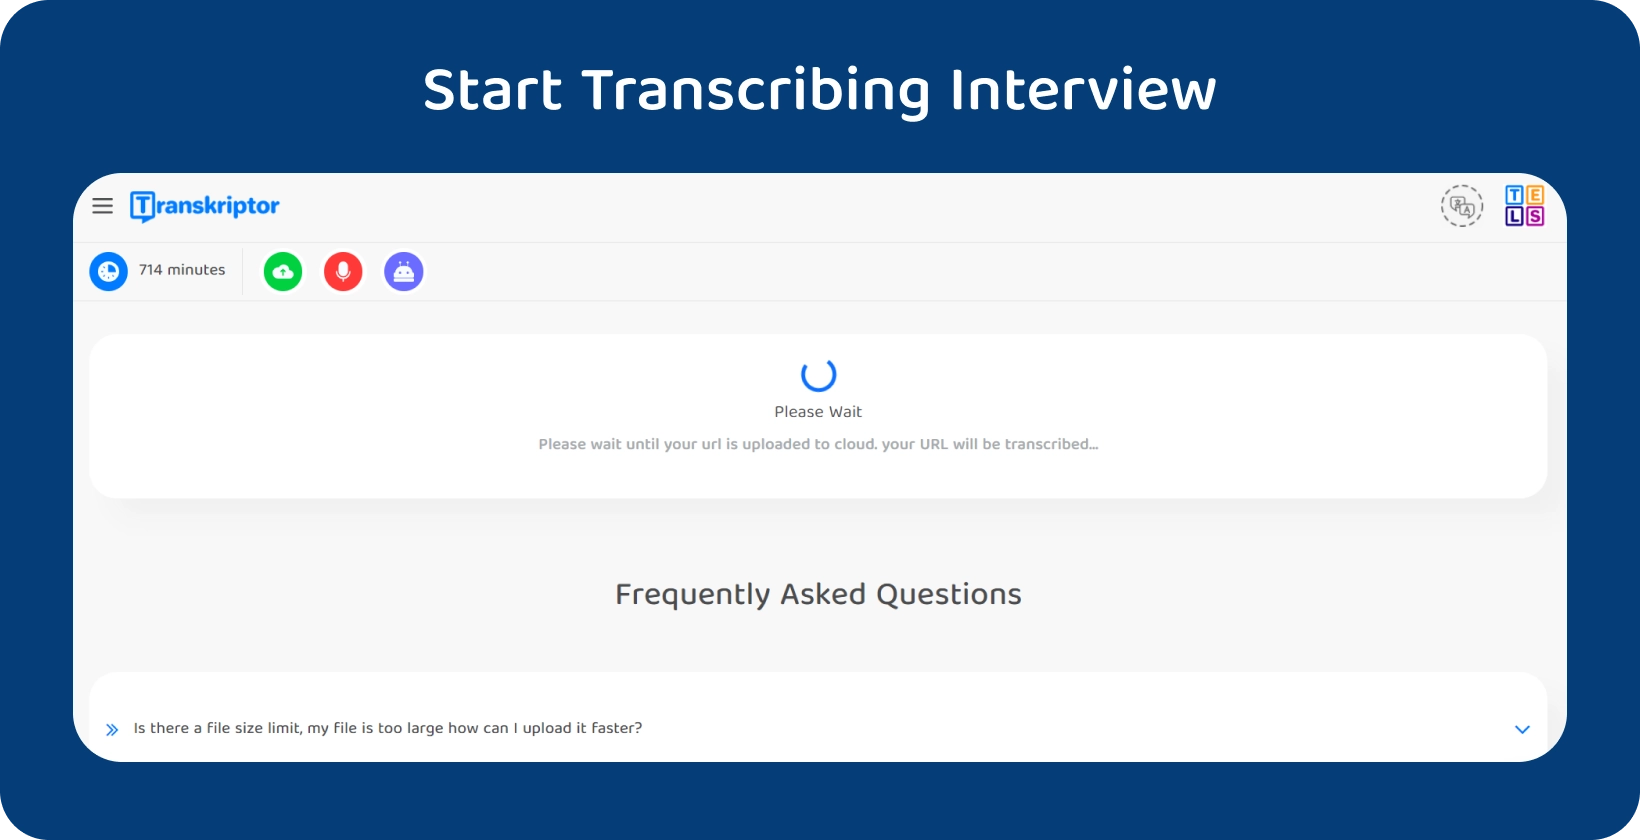 Tez transkripsiyonuna, işlenmeyi bekleyen 714 dakikalık bir görüşmeyi gösteren Transkriptor ile başlayın.